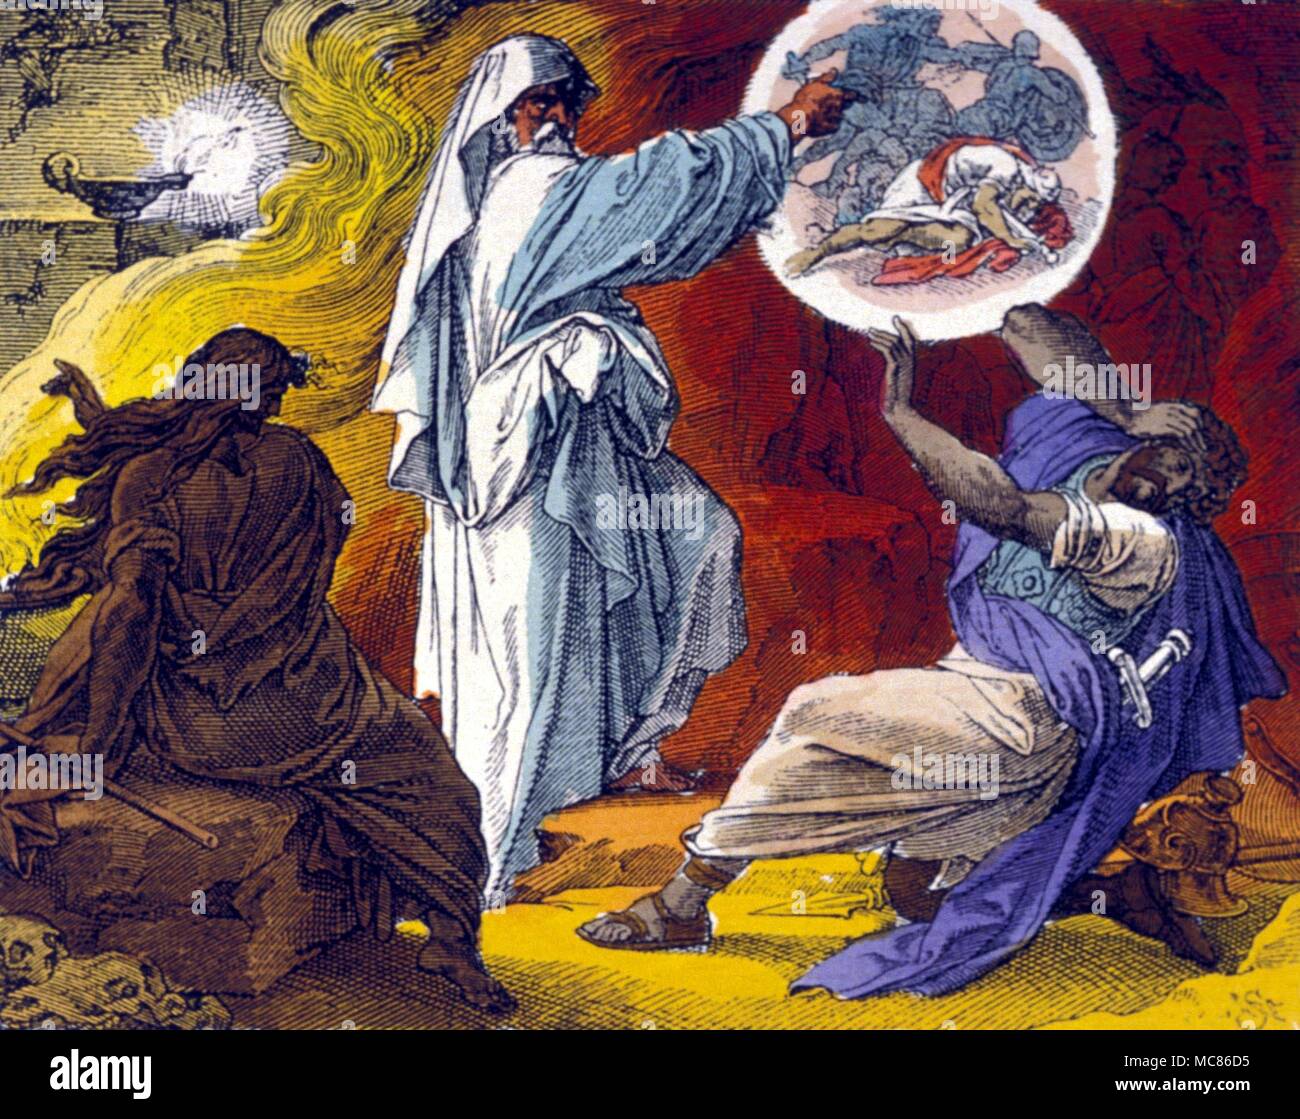 Hexerei die Hexe von Endor Saul und die Hexe von Endor. (1.Samuel, Kap. VI, V. 20). Gravur nach einem Gemälde von einem Strahuber,'Art Journal", 1891 Stockfoto